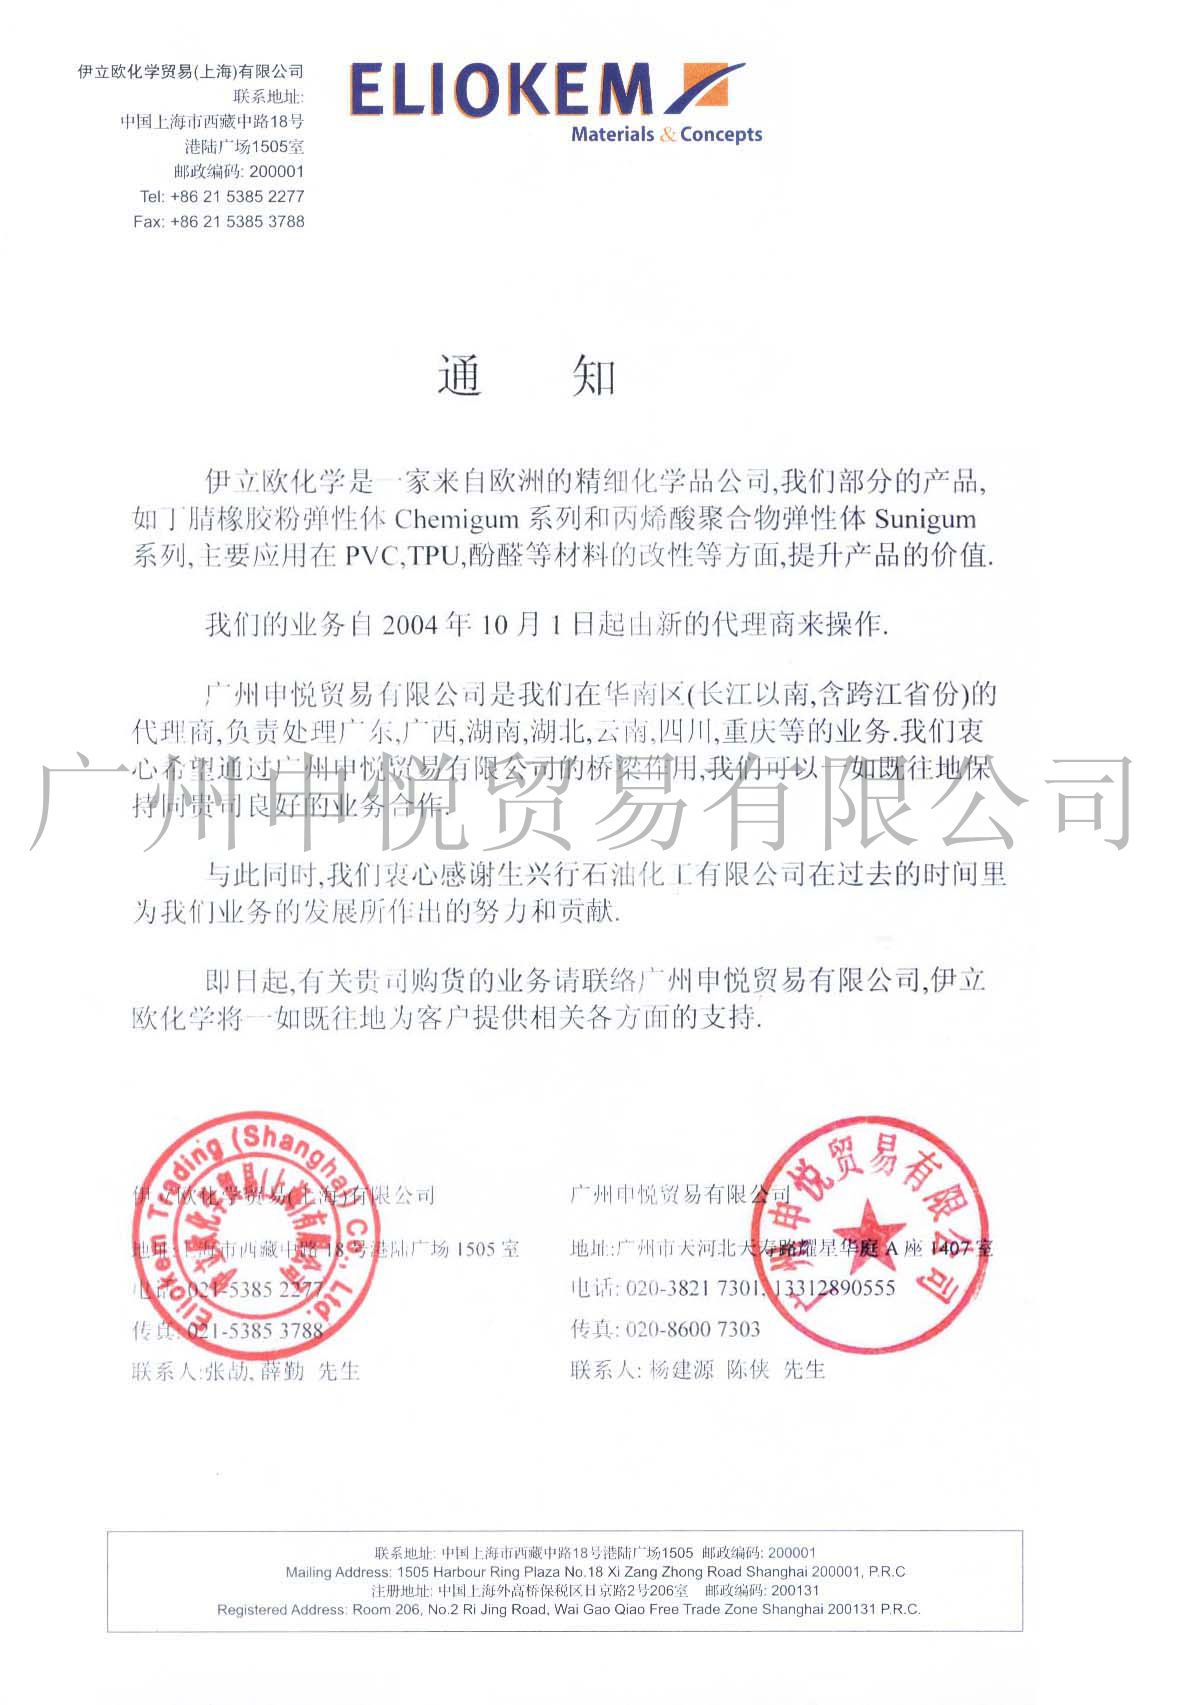 我司于2005年正式与法国伊利欧公司签署中国华南区代理协议书